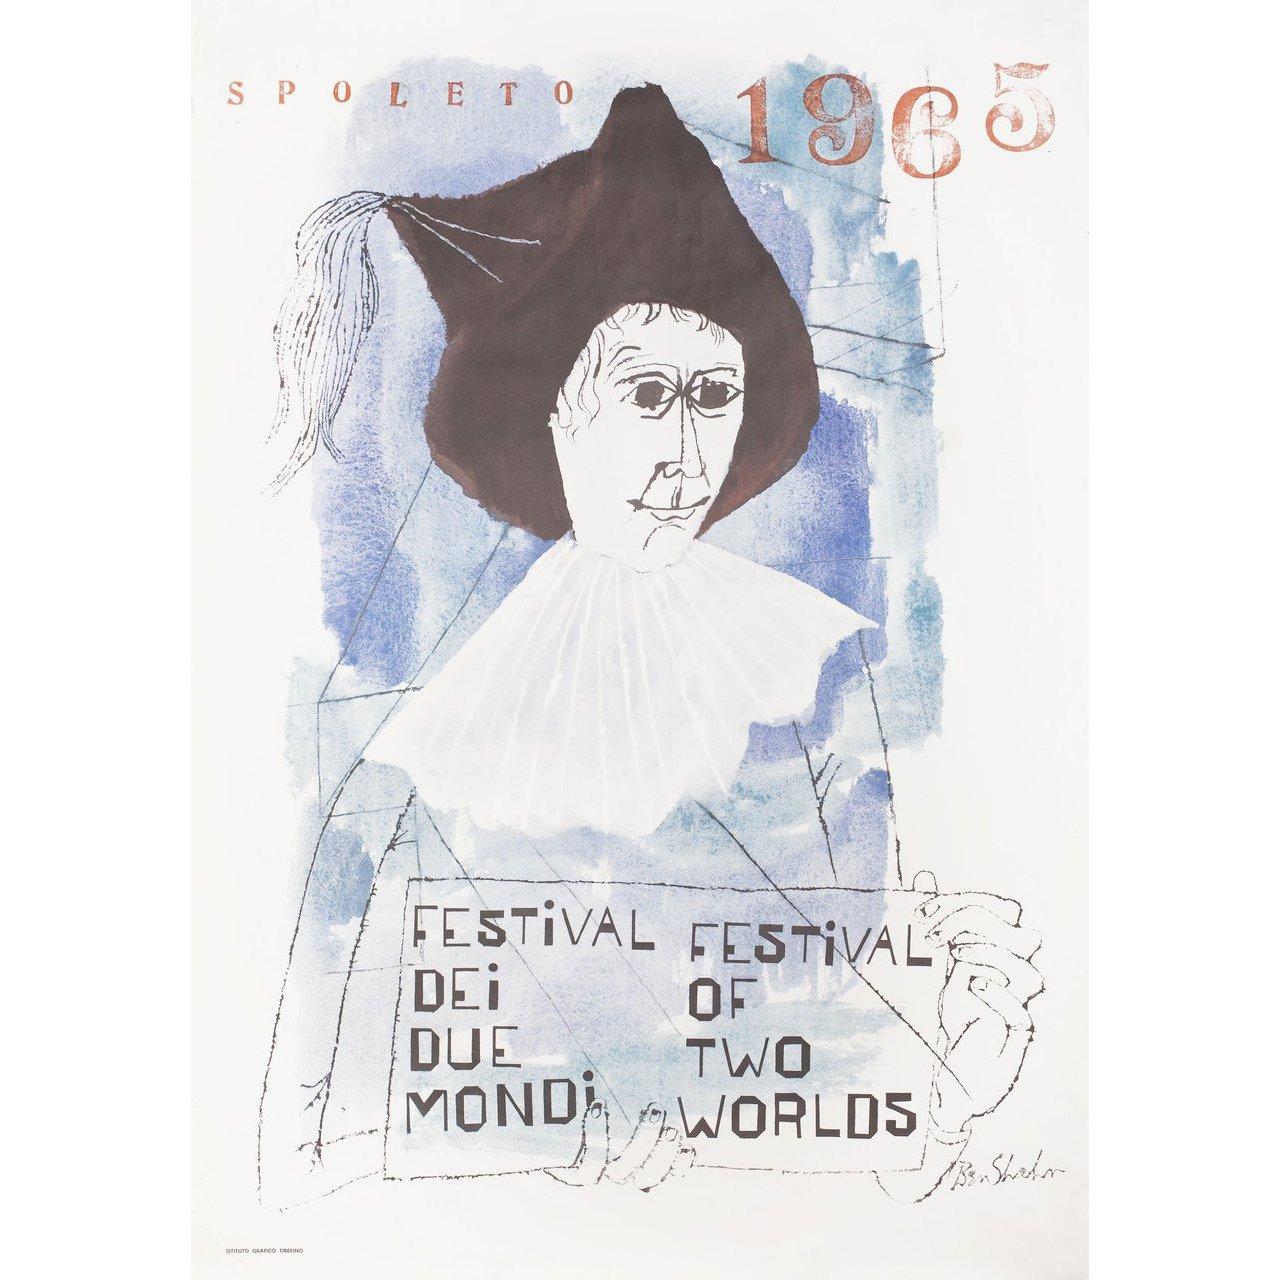 Originales italienisches Foglio-Plakat von Ben Shahn aus dem Jahr 1965 für das Festival von Spoleto (Festival dei Due Mondi) von 1958. Sehr guter Zustand, gerollt mit Randabnutzung und Flecken. Bitte beachten Sie: Die Größe ist in Zoll angegeben und